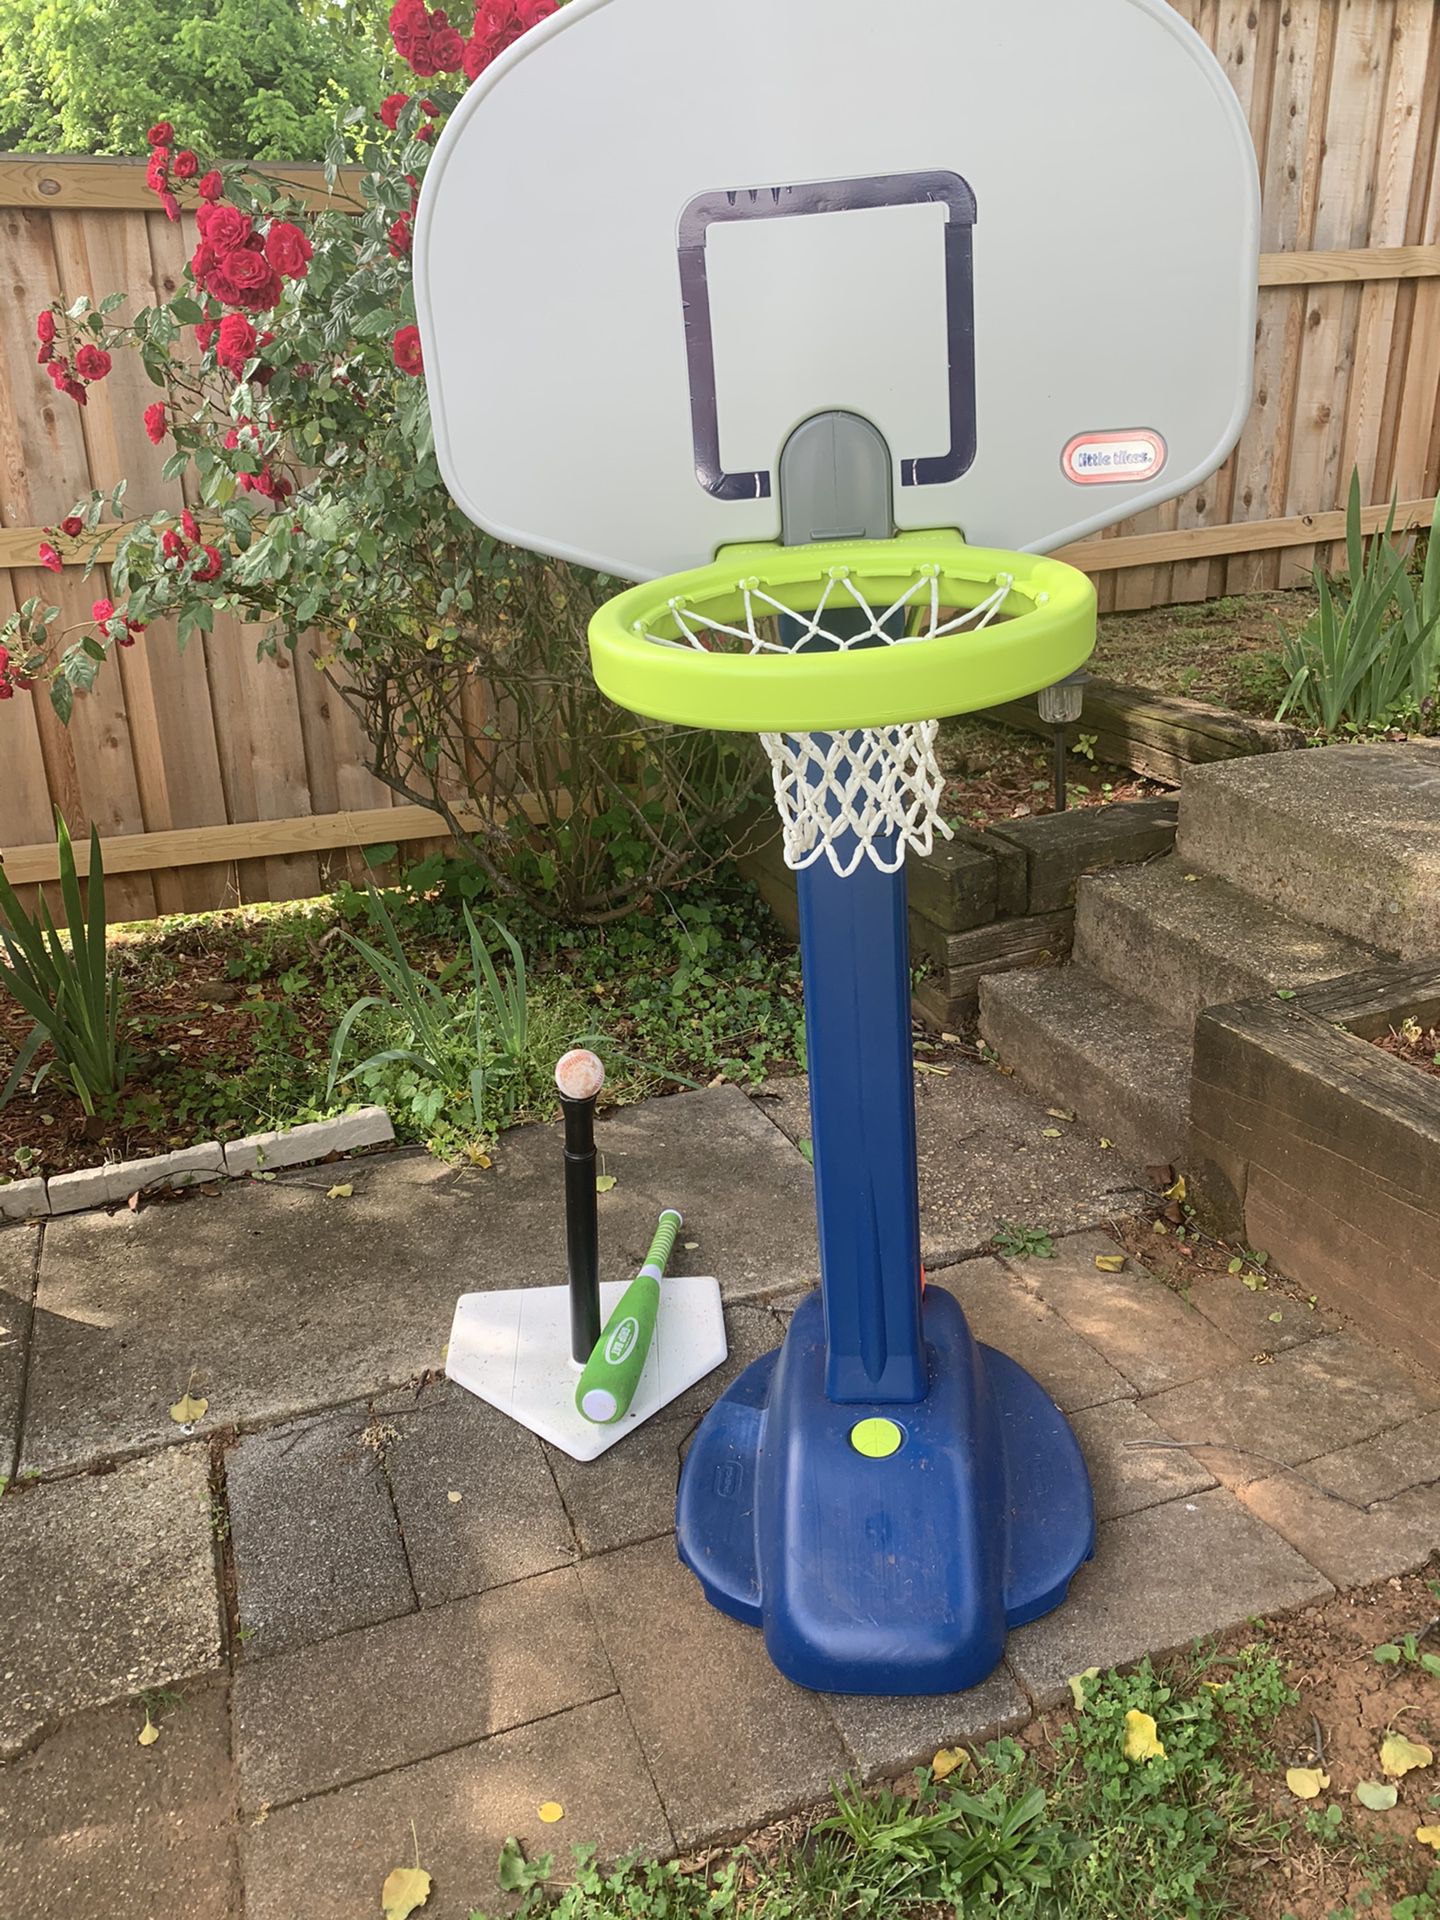 Basketball goal and Tee Ball -Both are adjustable